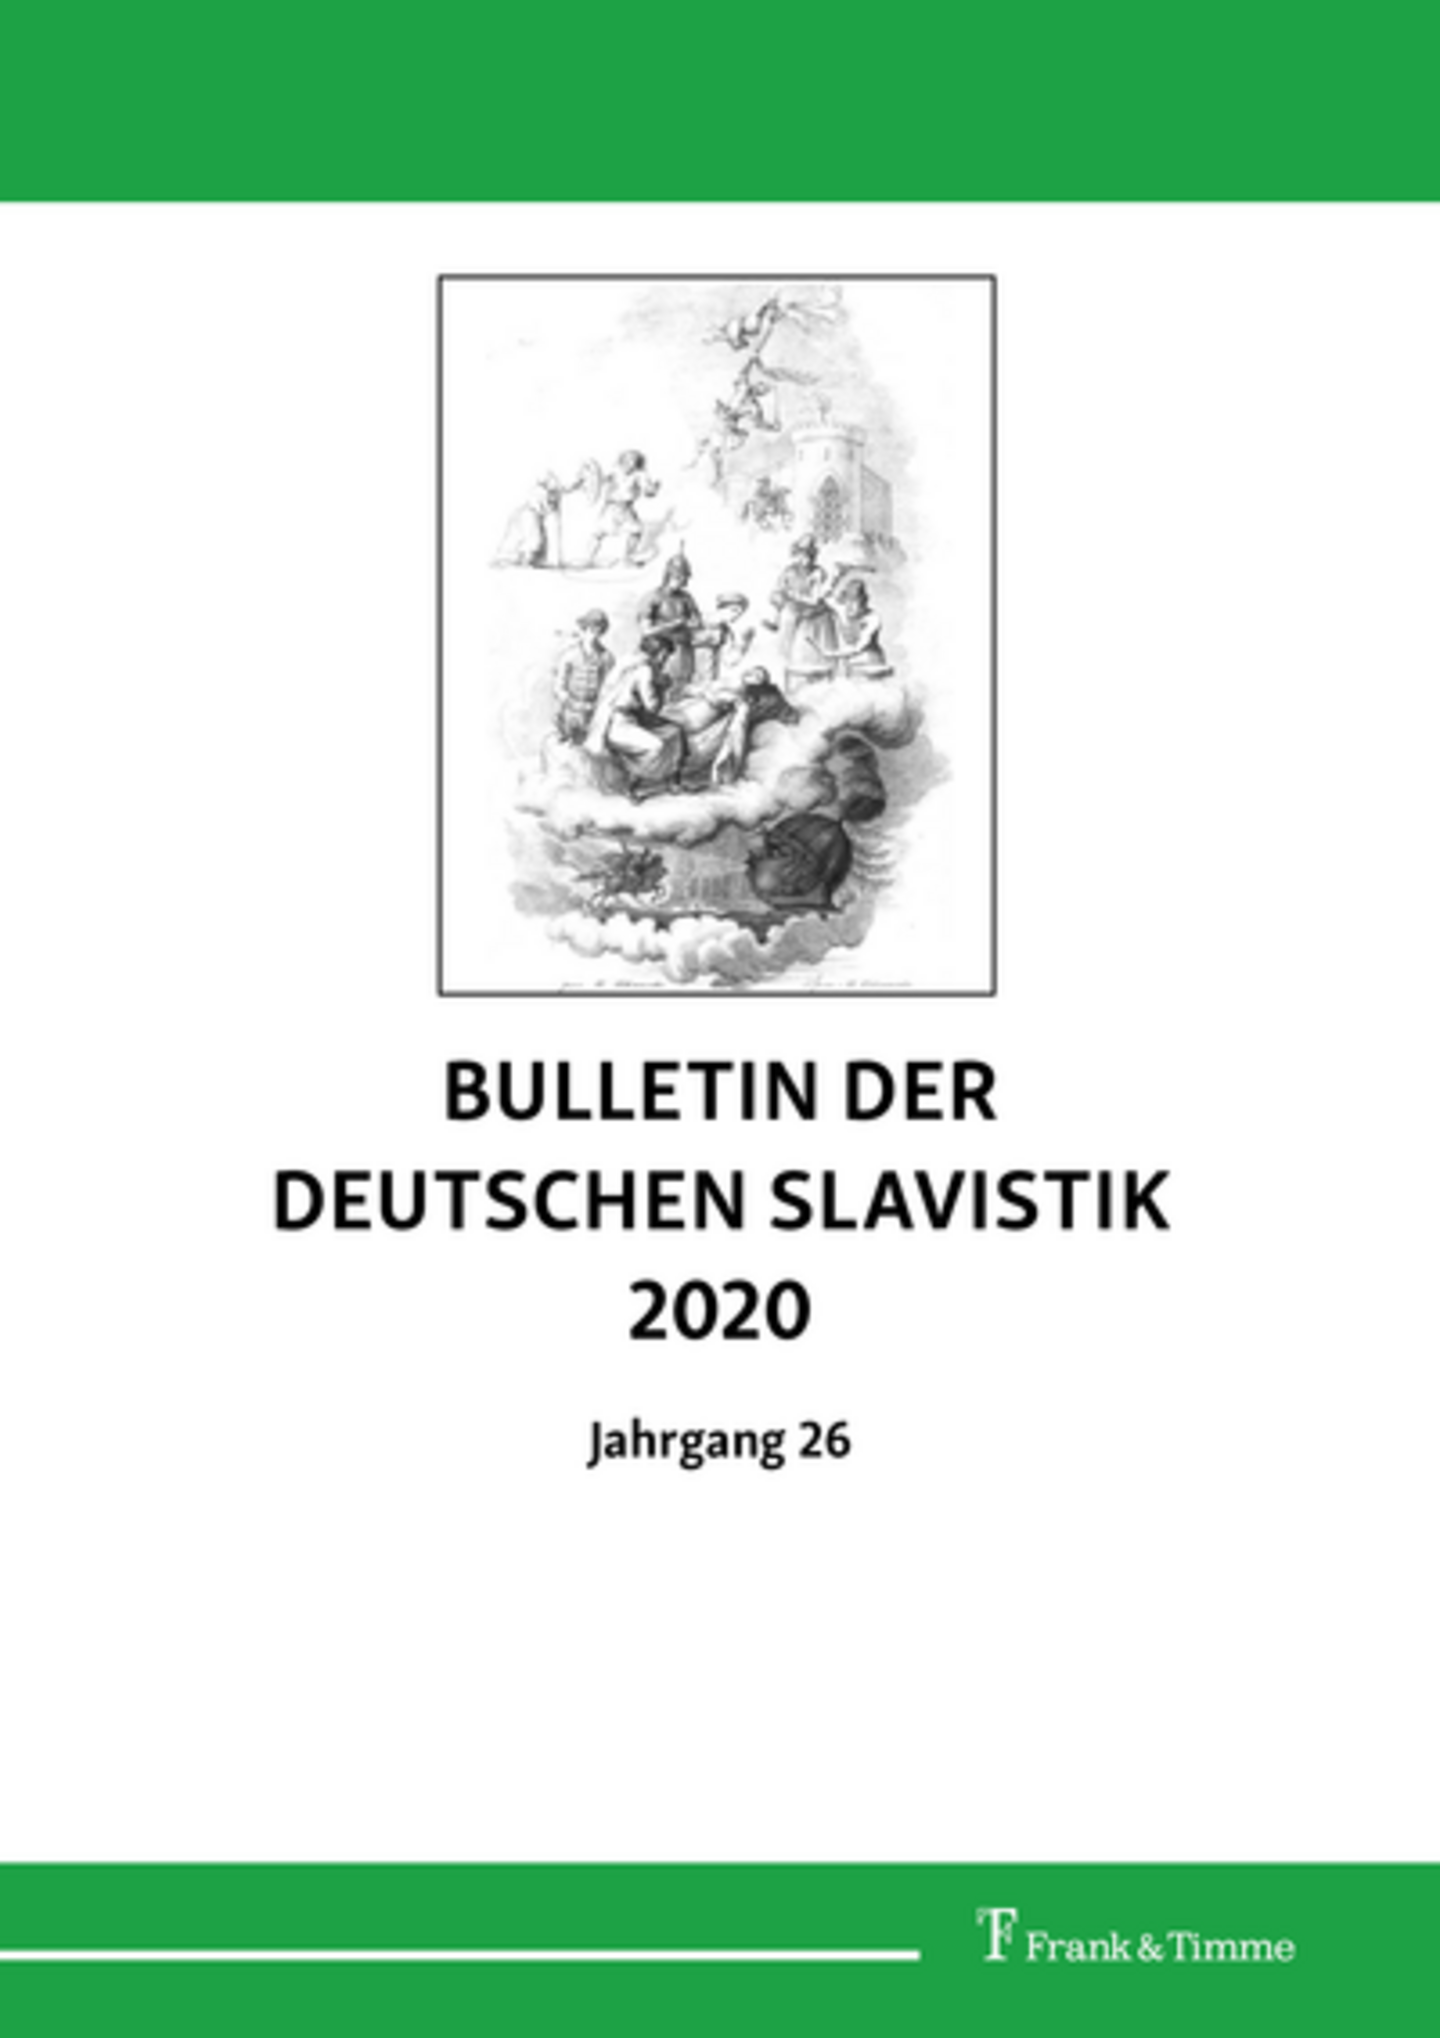 Bulletin der deutschen Slavistik 26 (2020)